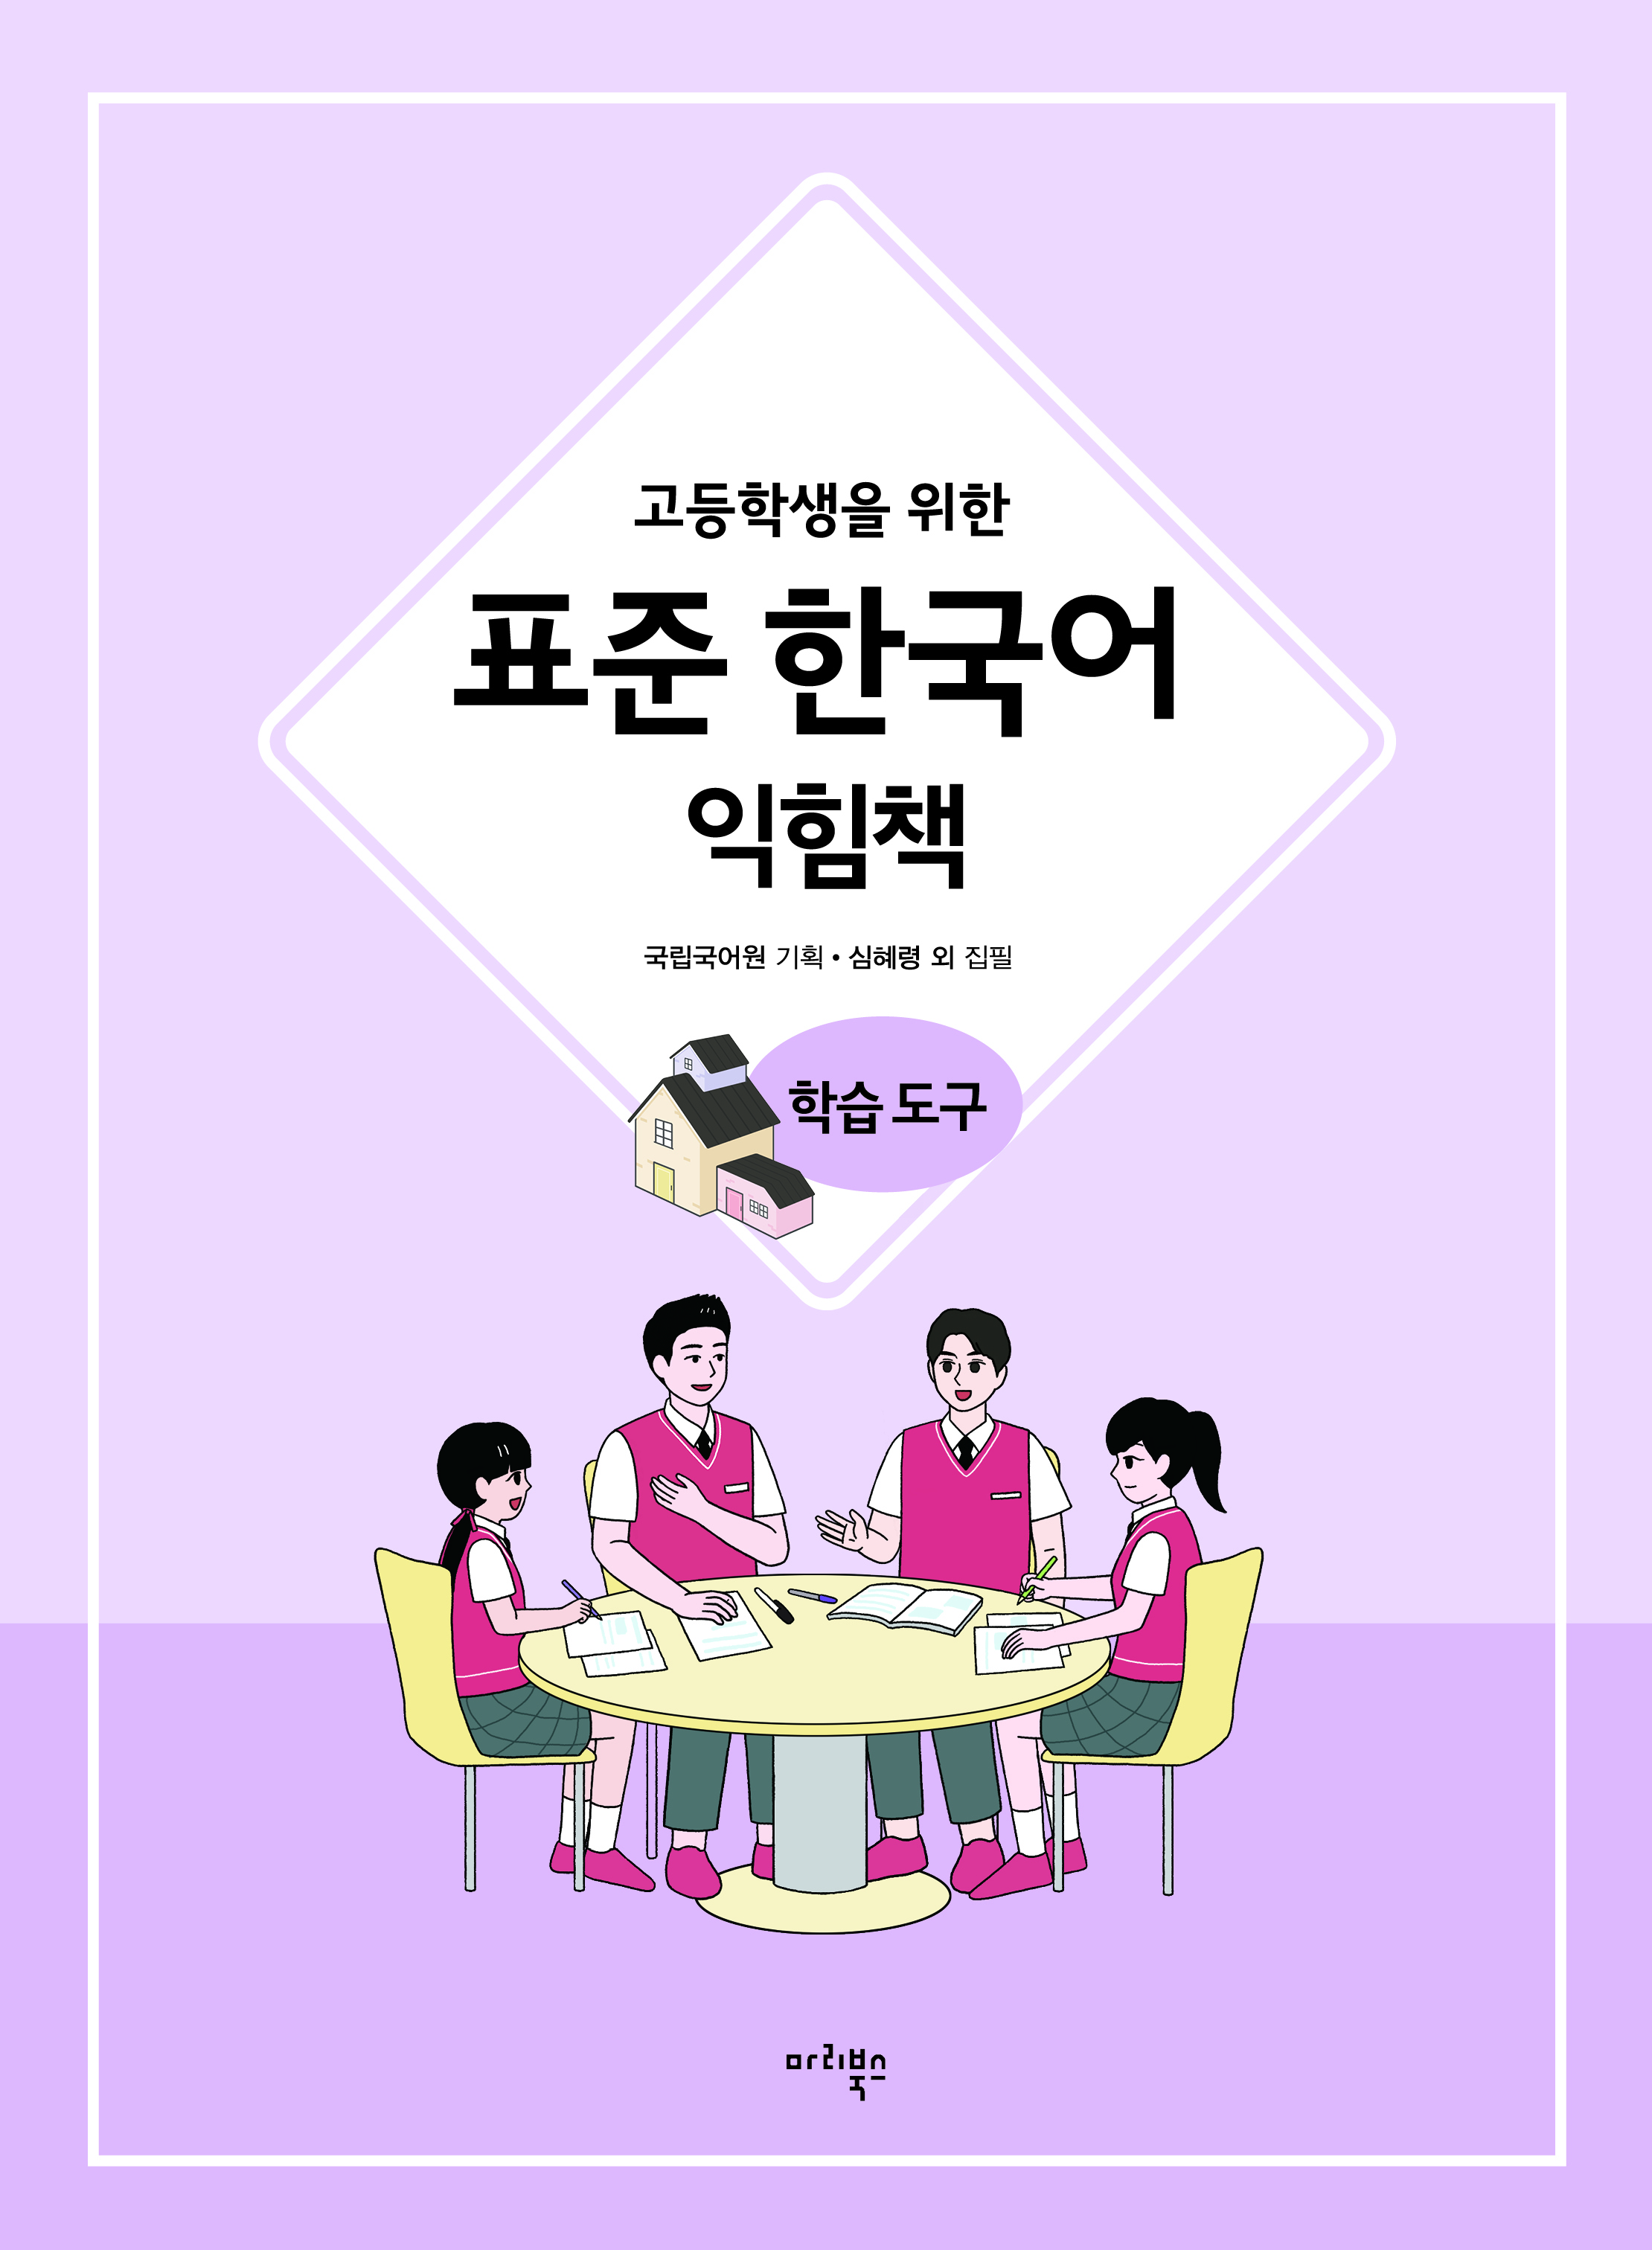 고등학생을 위한 표준 한국어 익힘책 학습 도구